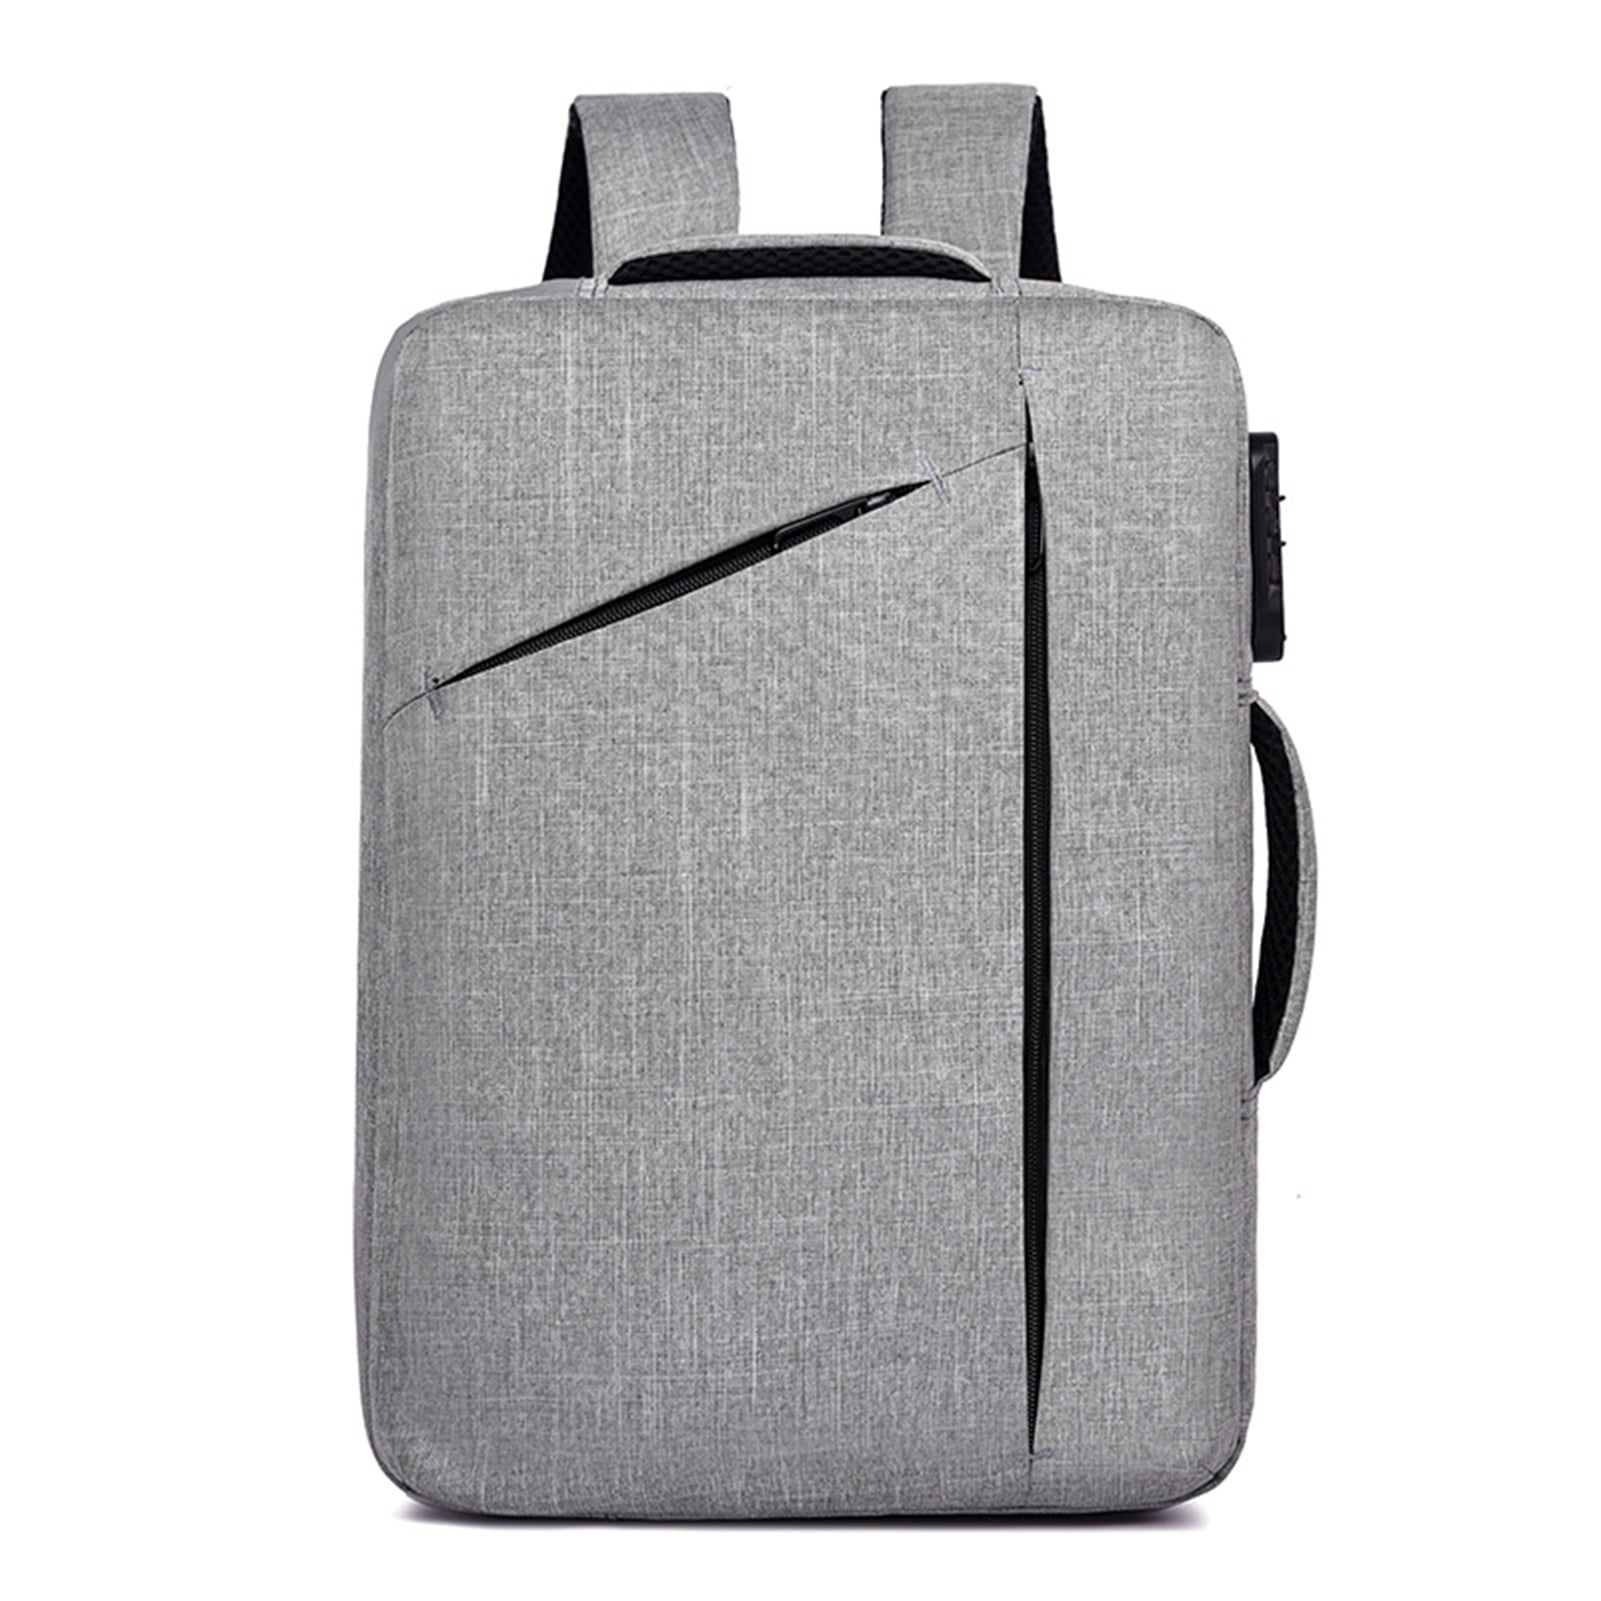 Carton Hedgehog Waterproof Laptop Backpack for 13in Laptop Men Women Student Travel Outdoor Backpack